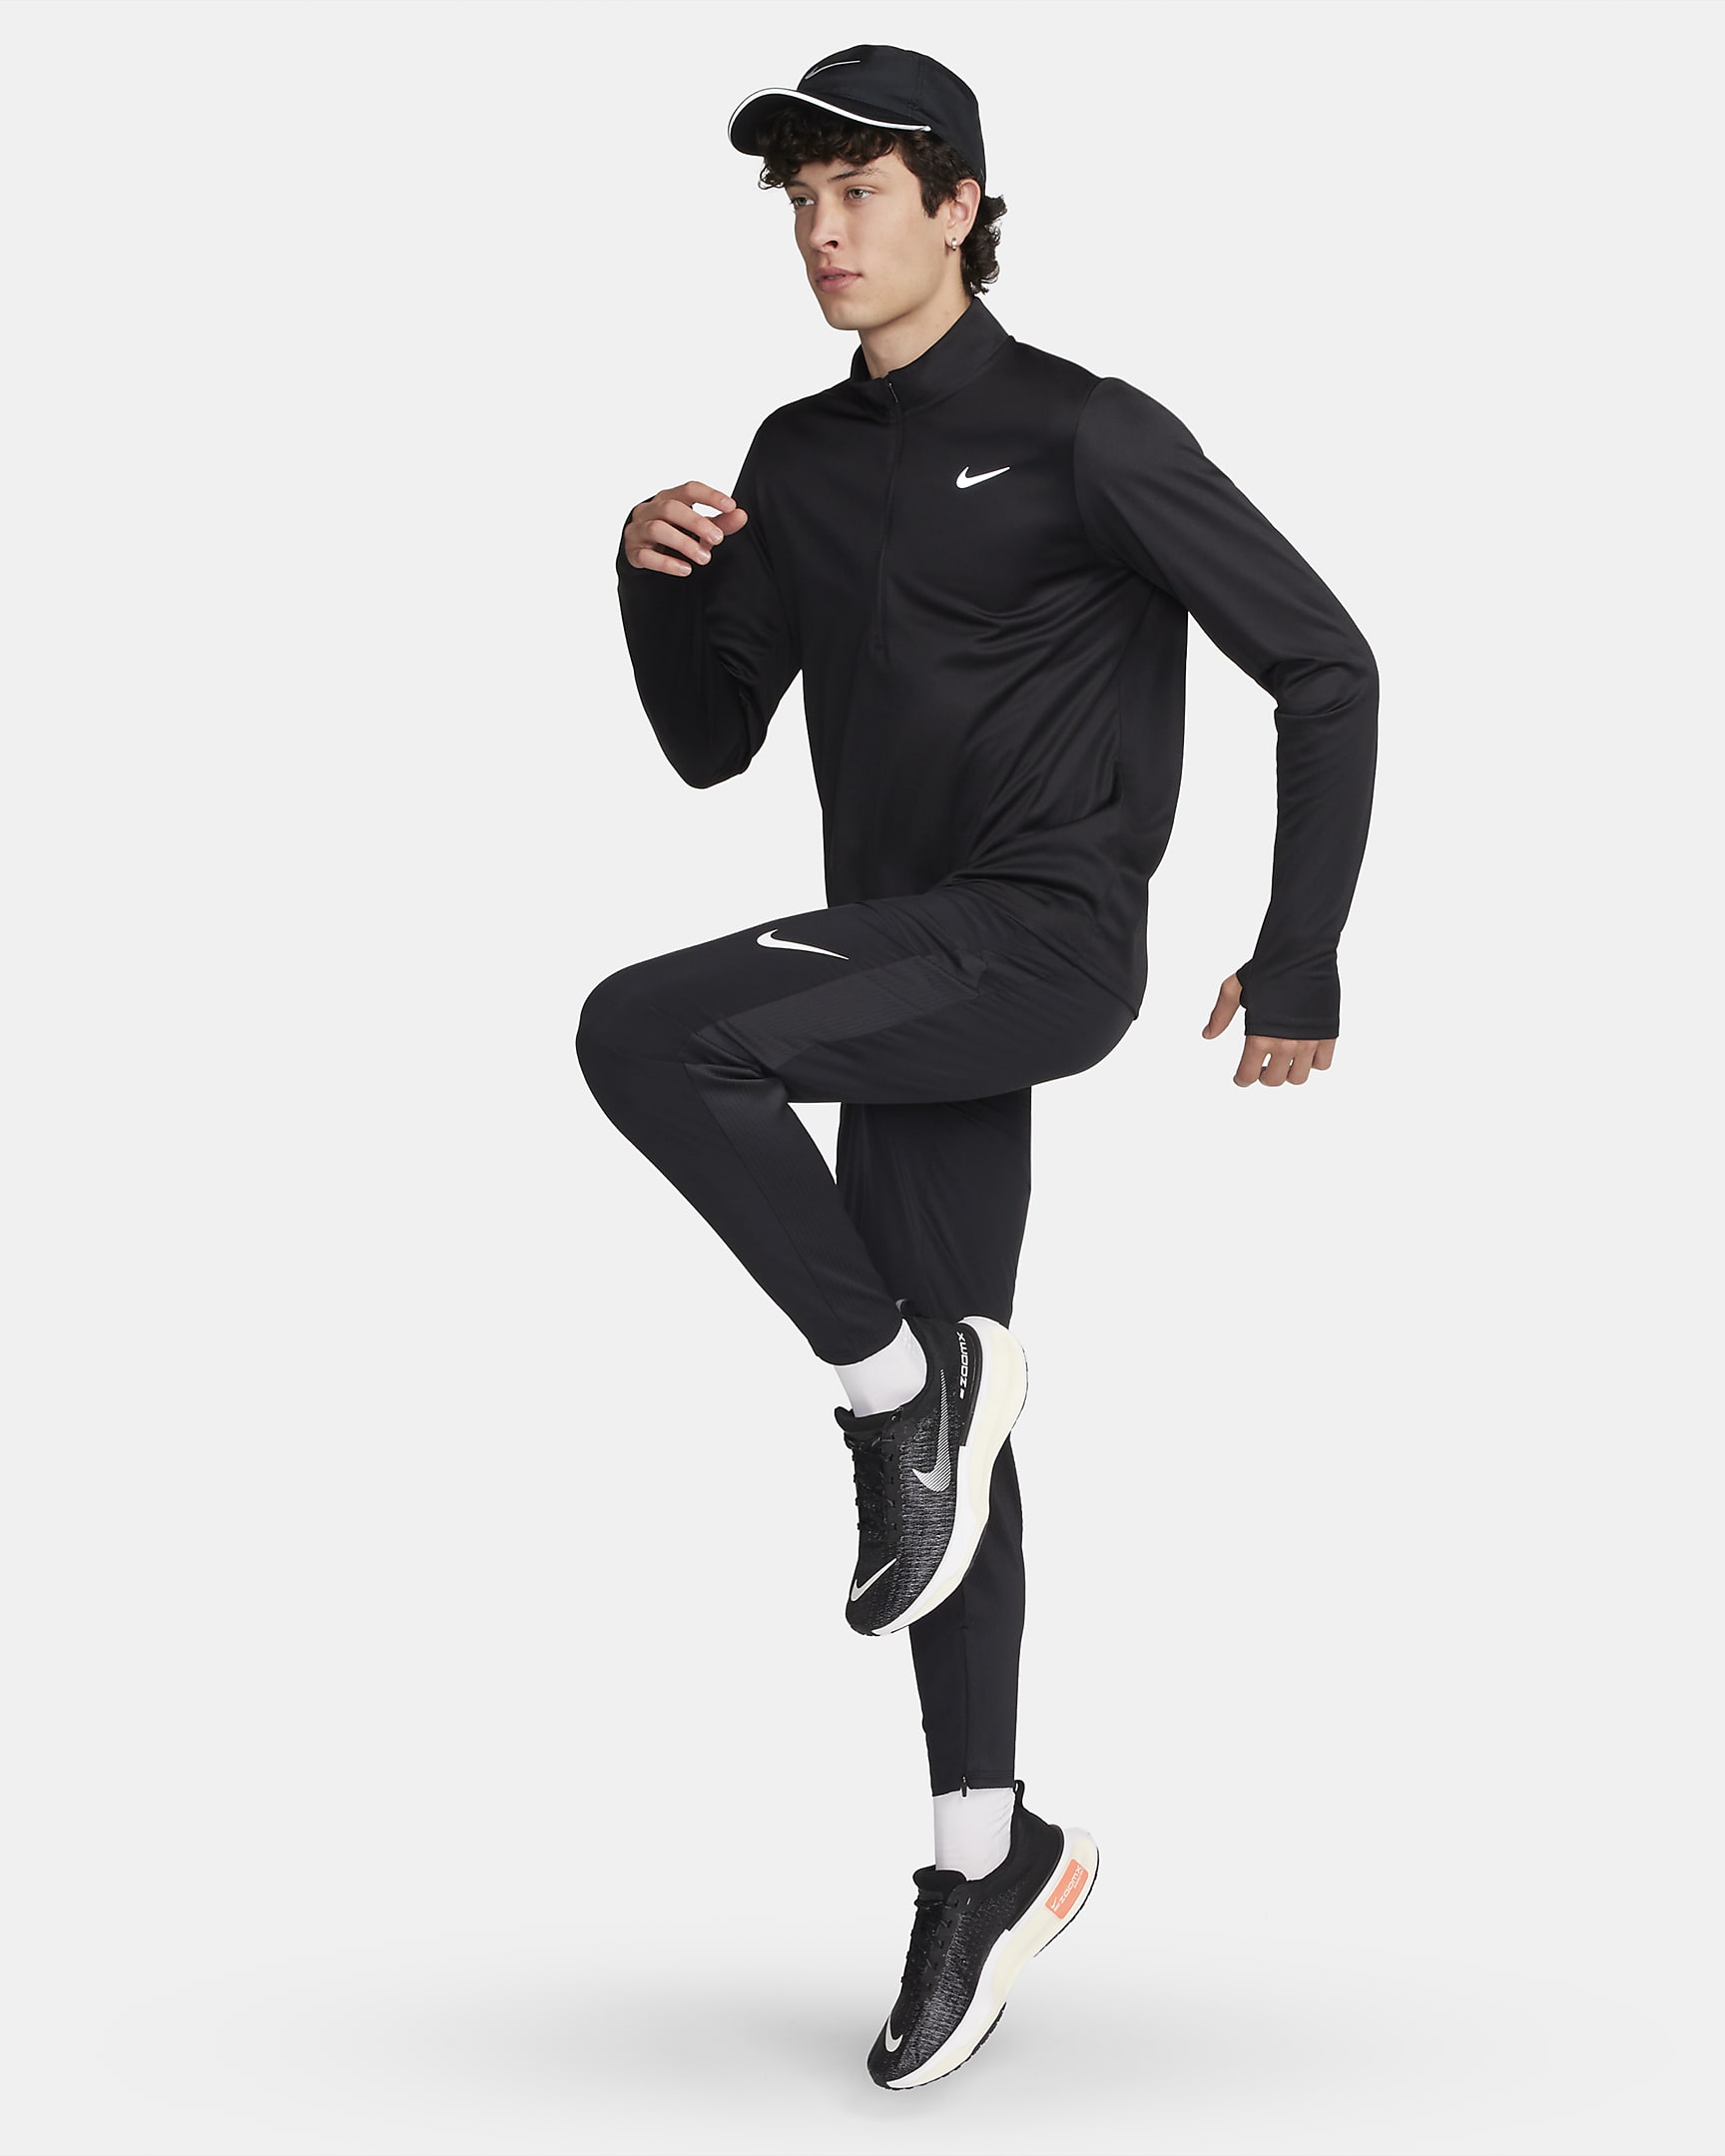 Haut de running à demi-zip Dri-FIT Nike Pacer pour homme - Noir